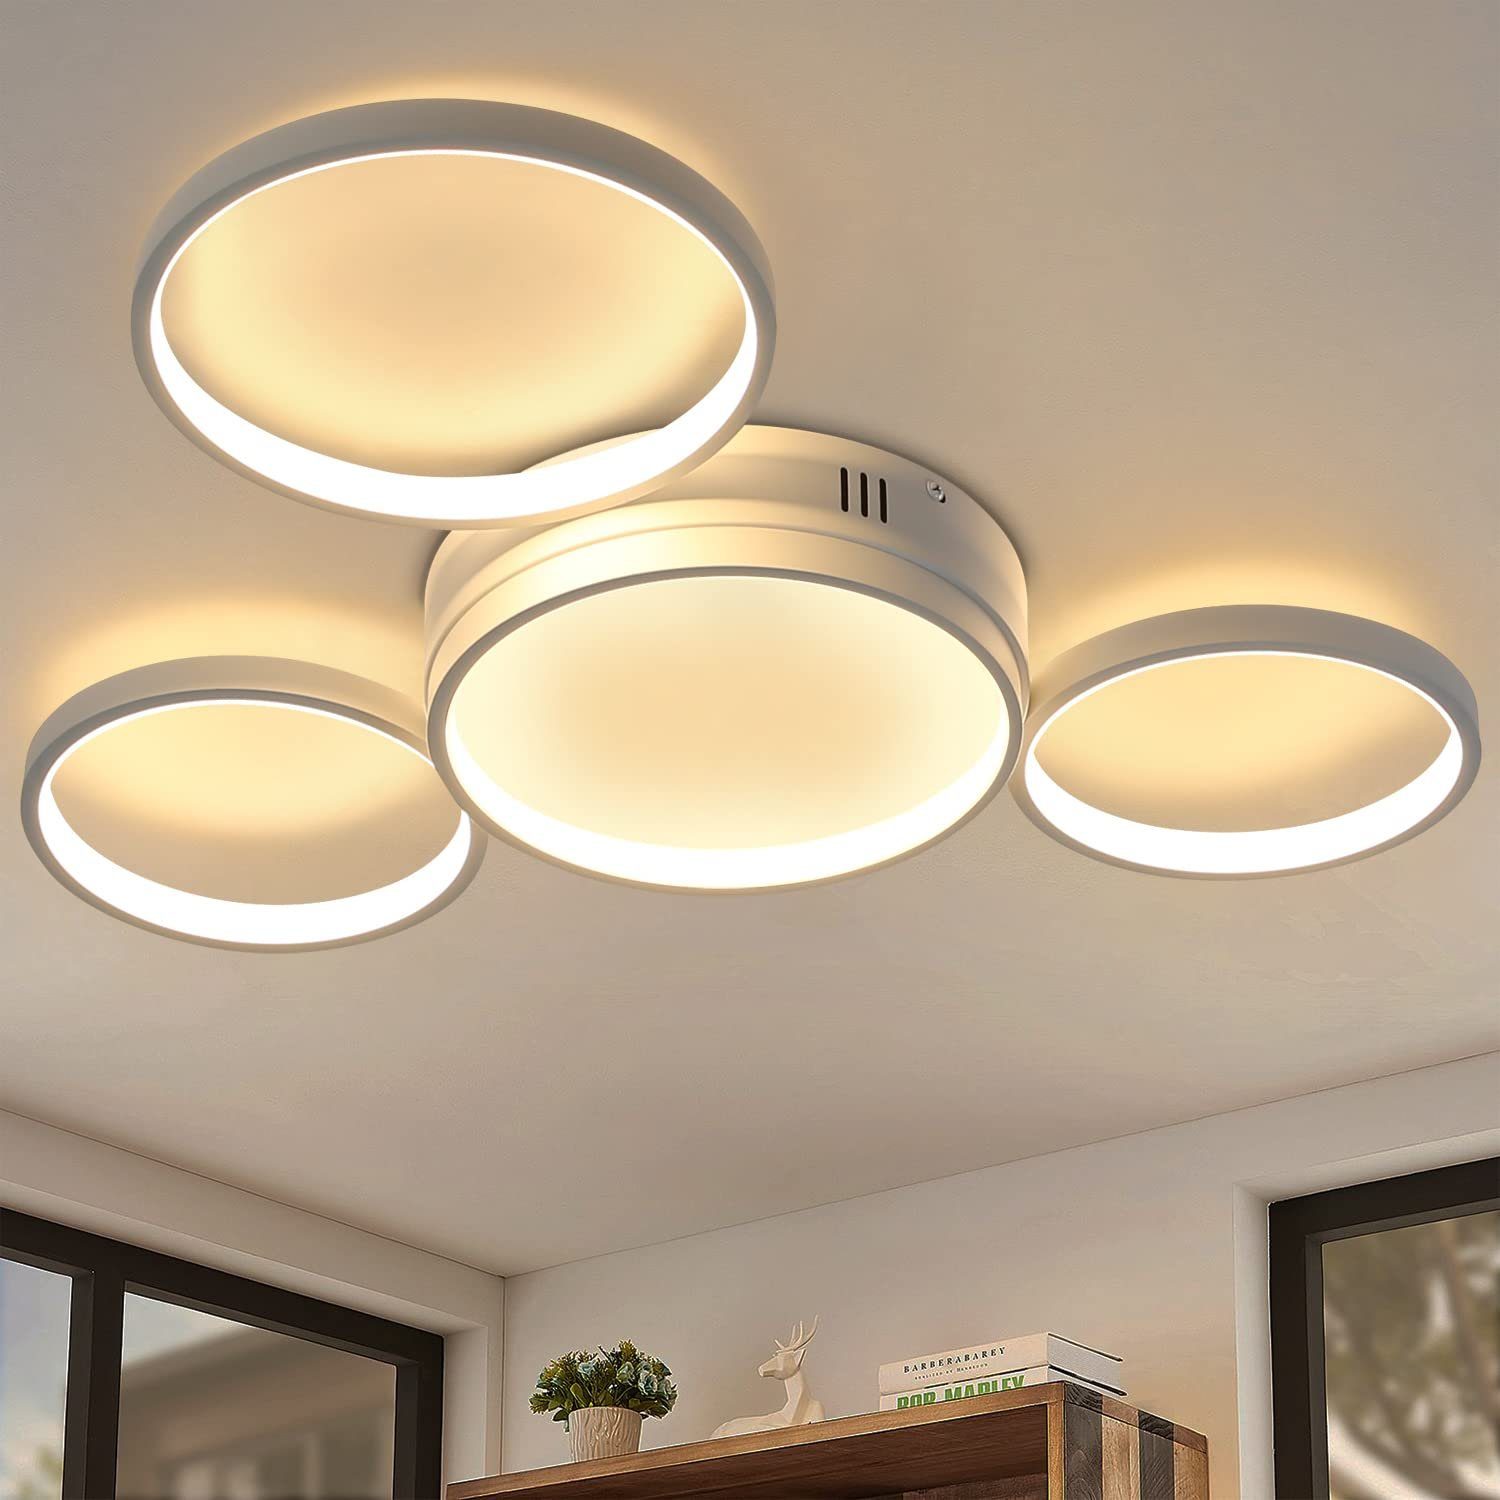 LED Decken Lampe Schlaf-Zimmer Wohn-Raum Blatt Gold Effekt Bad Flur Leuchte 60cm 